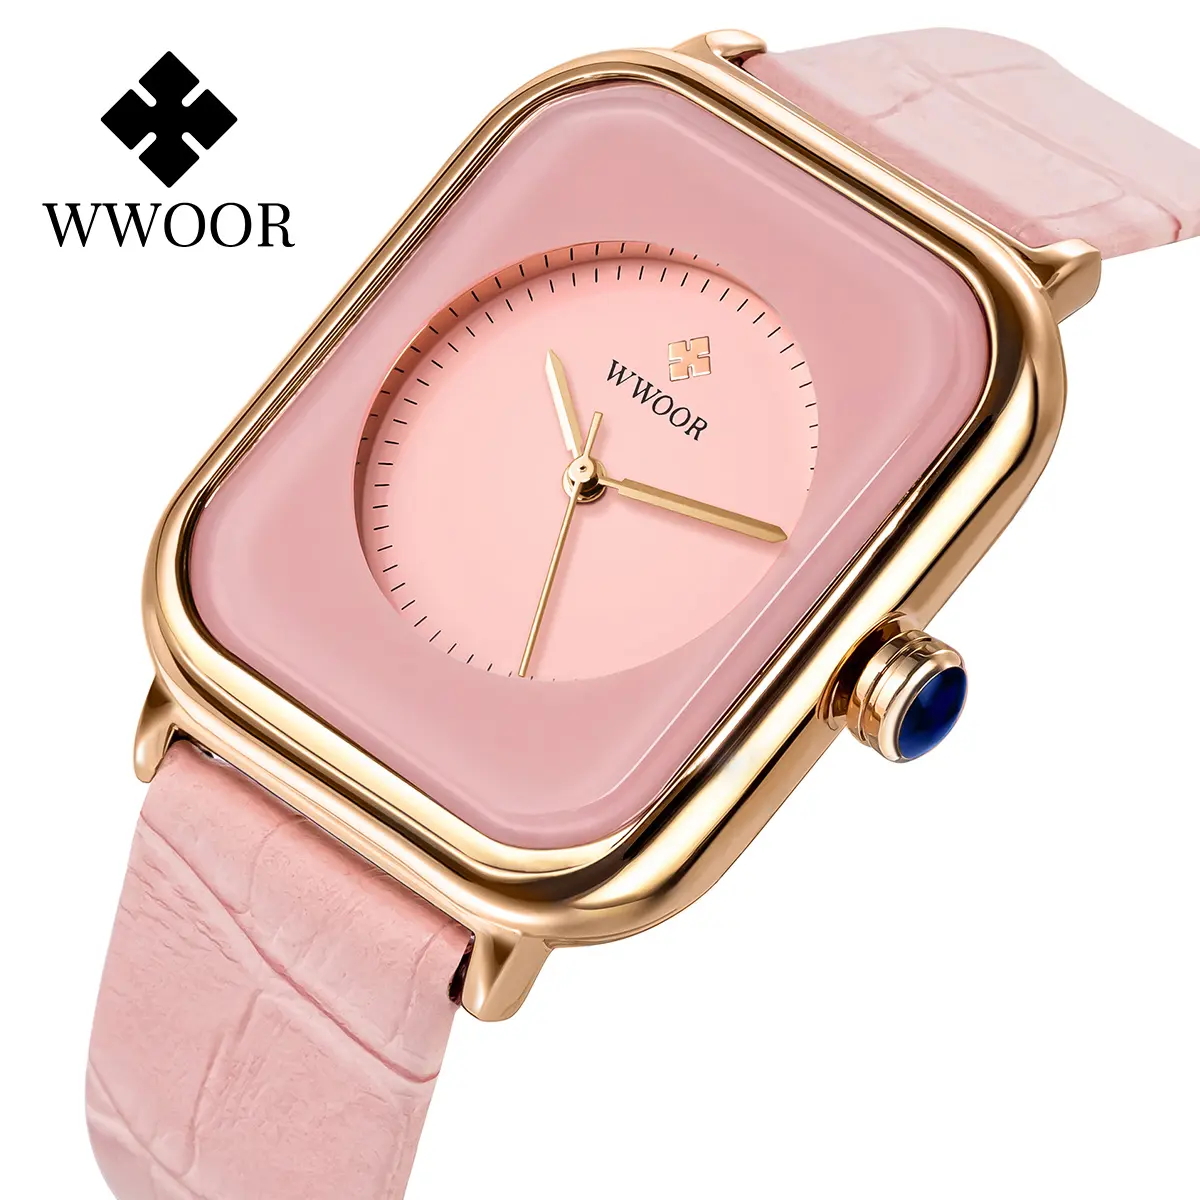 WWOOR Brand Women Watches Square Fashion Luxury Ladies Leather Strap Clocks Quartz Watch